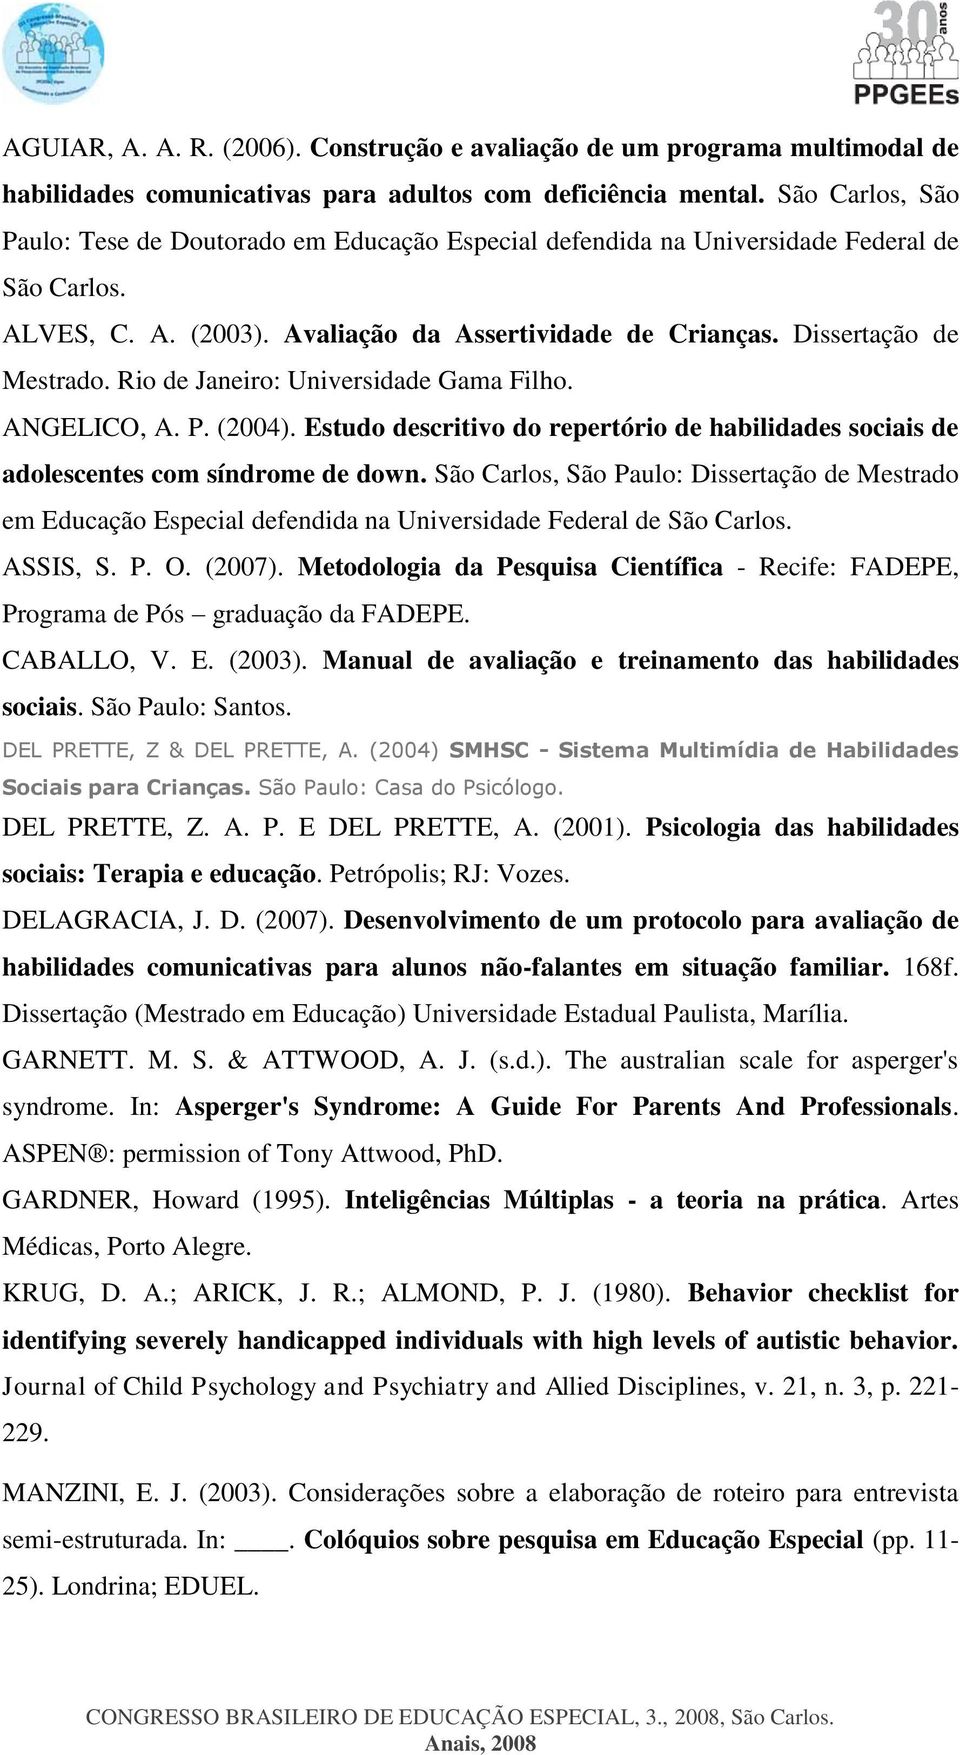 Rio de Janeiro: Universidade Gama Filho. ANGELICO, A. P. (2004). Estudo descritivo do repertório de habilidades sociais de adolescentes com síndrome de down.